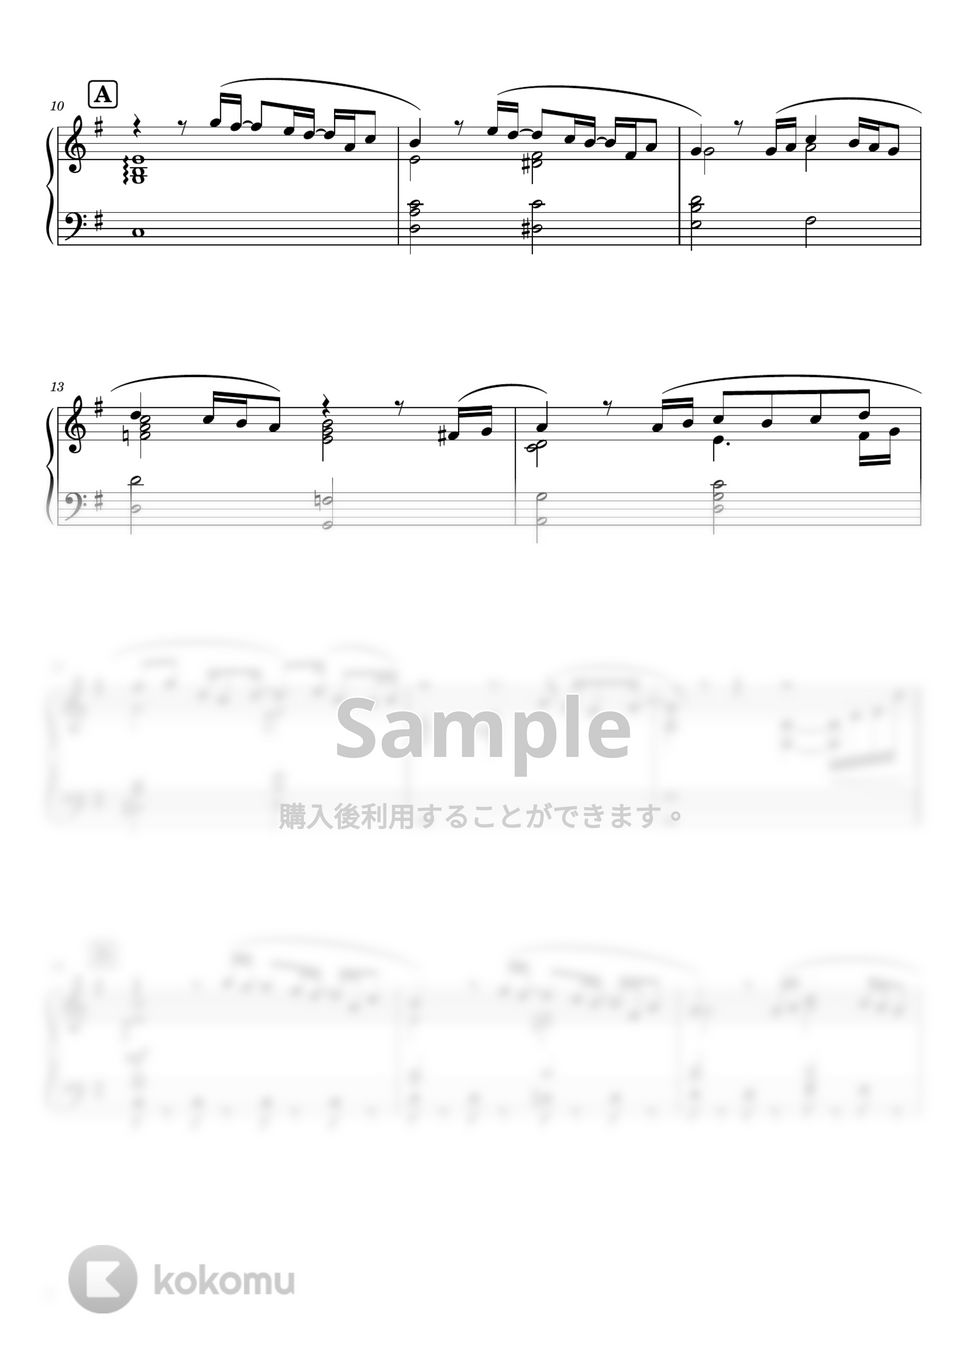 米津玄師 - Pale Blue  Full ver. (ピアノソロ 上級) by SuperMomoFactory